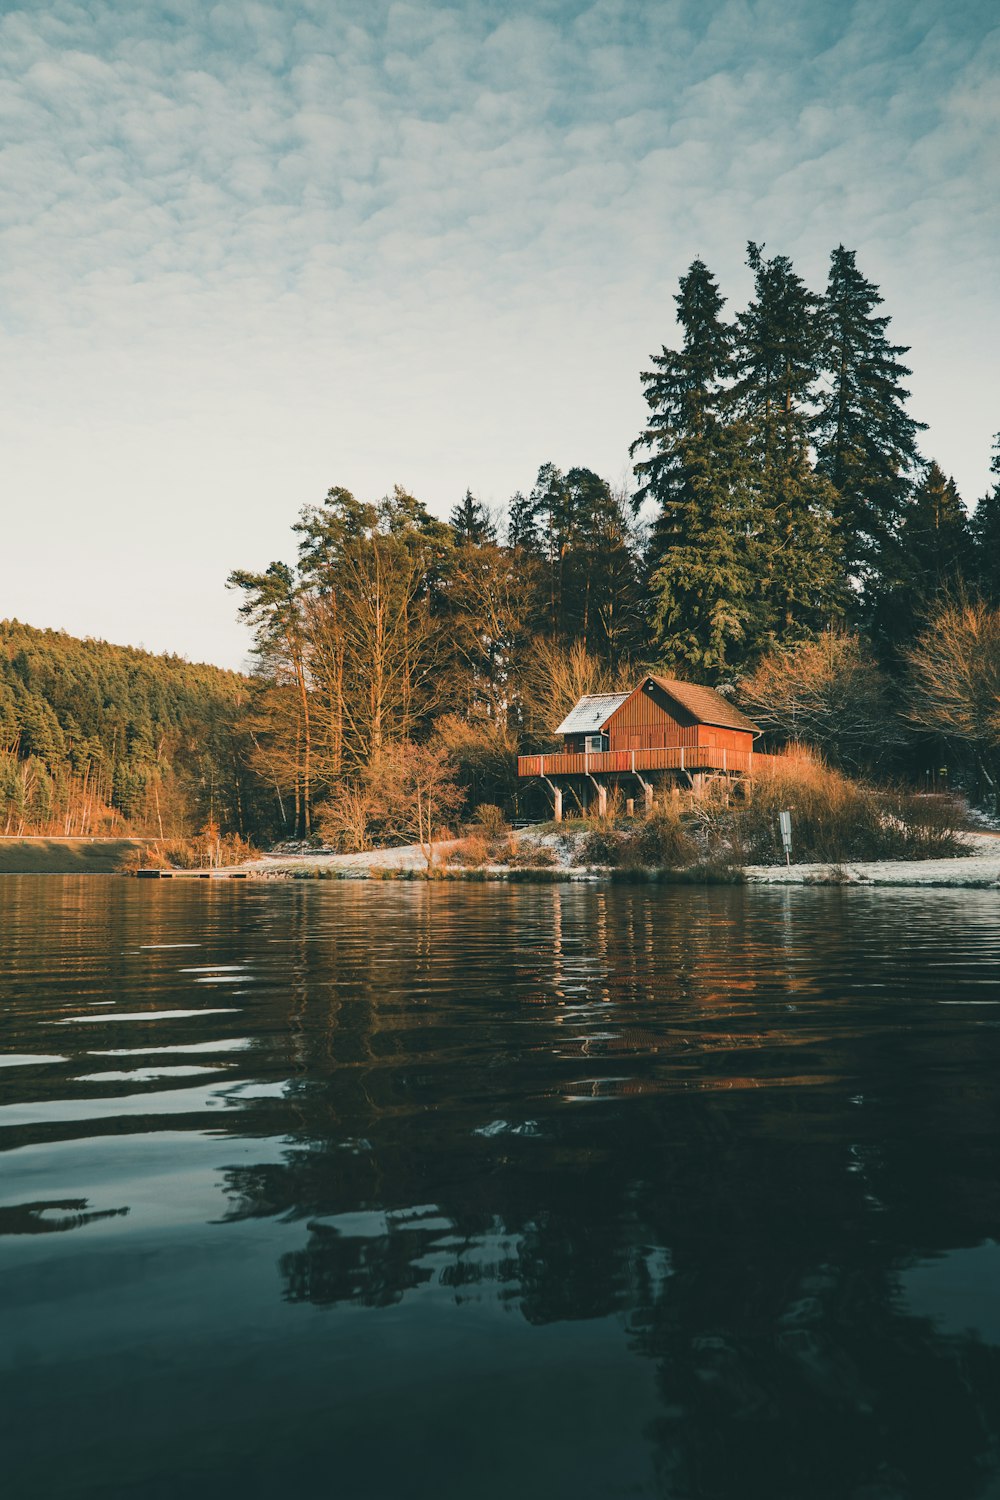 昼間は木々に囲まれた湖畔の茶色い木造家屋